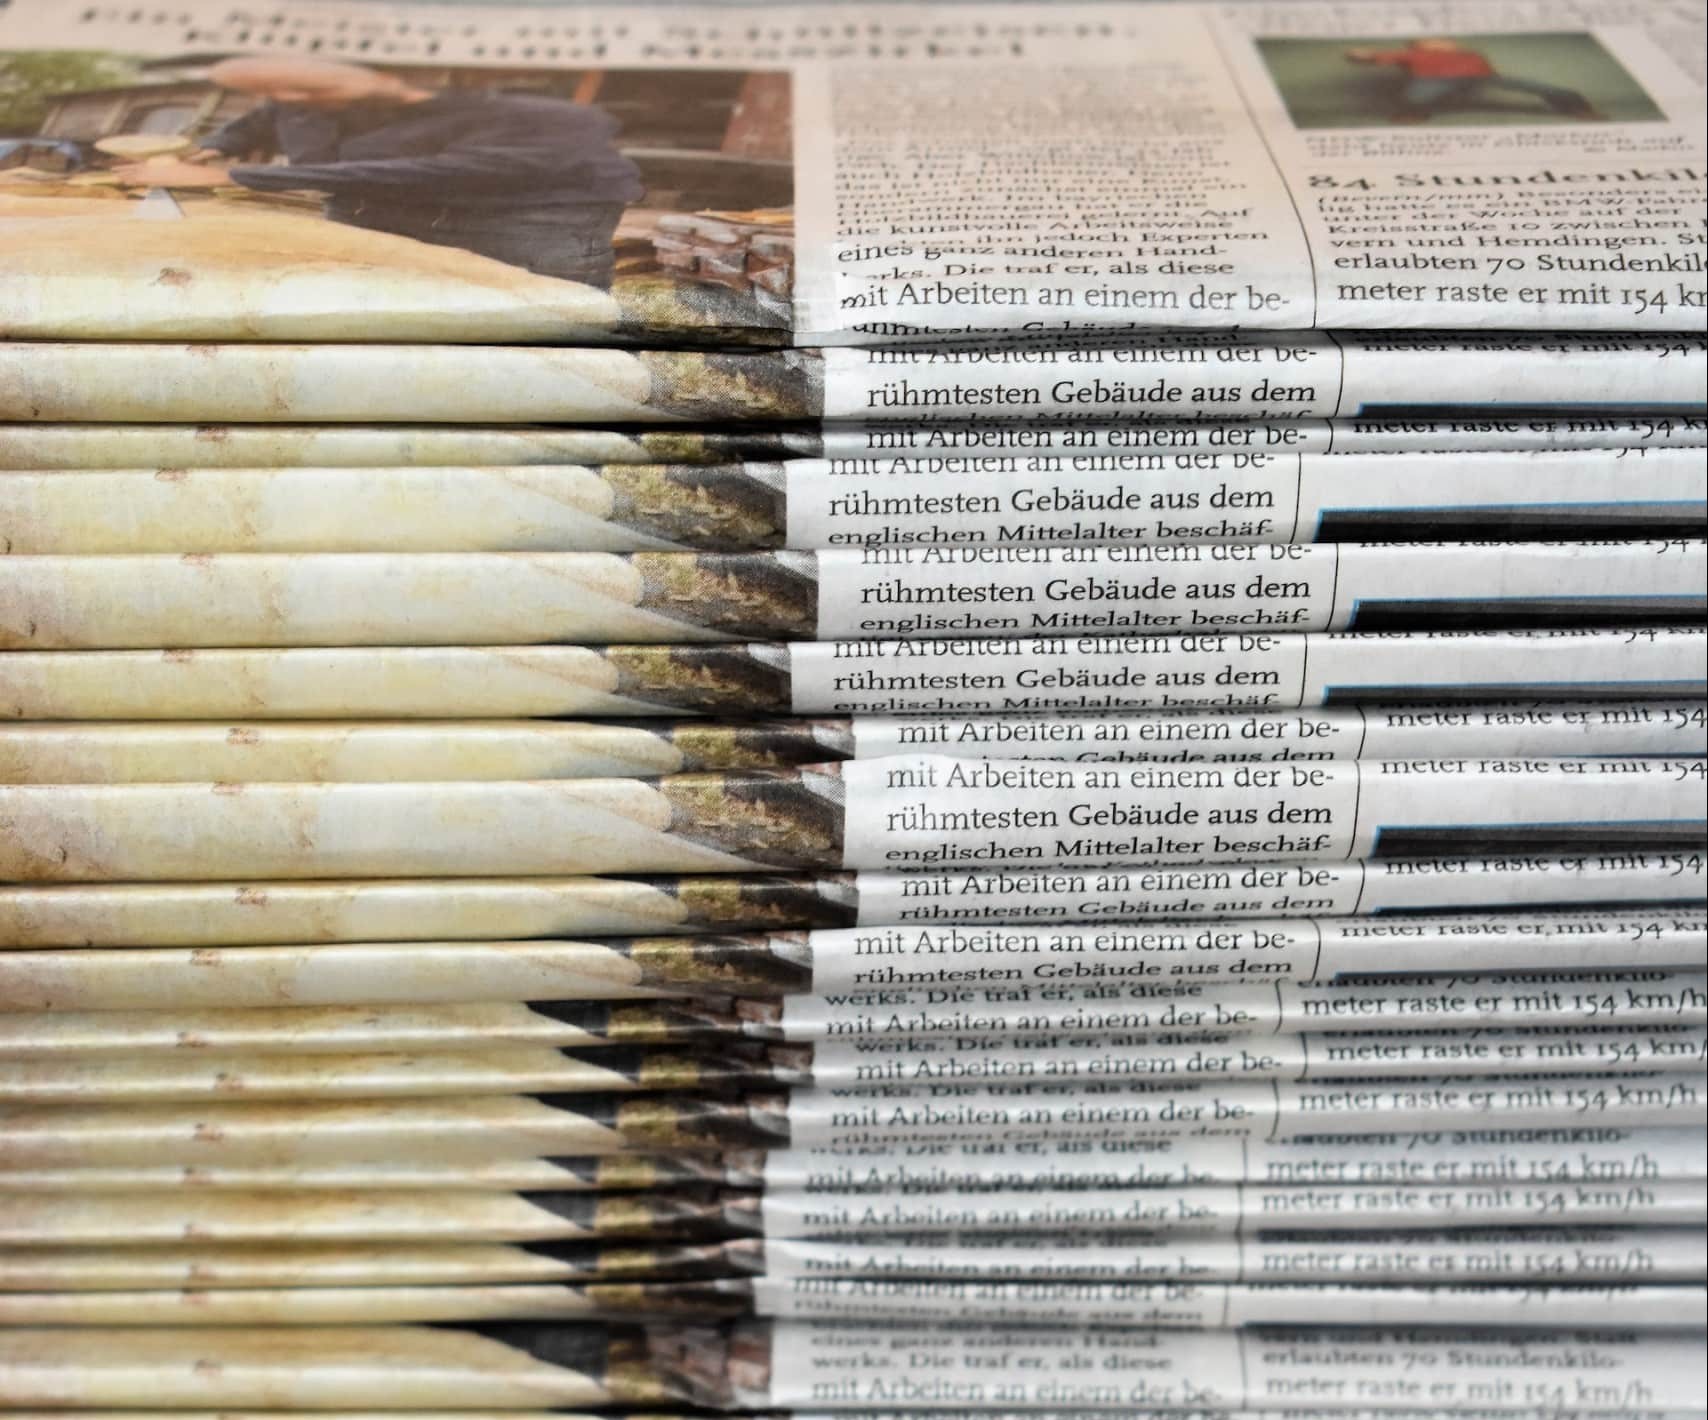 Zwei hohe Stapel Zeitungen mit unterschiedlich farbigem Papier, Foto: Waldemar via Unsplash